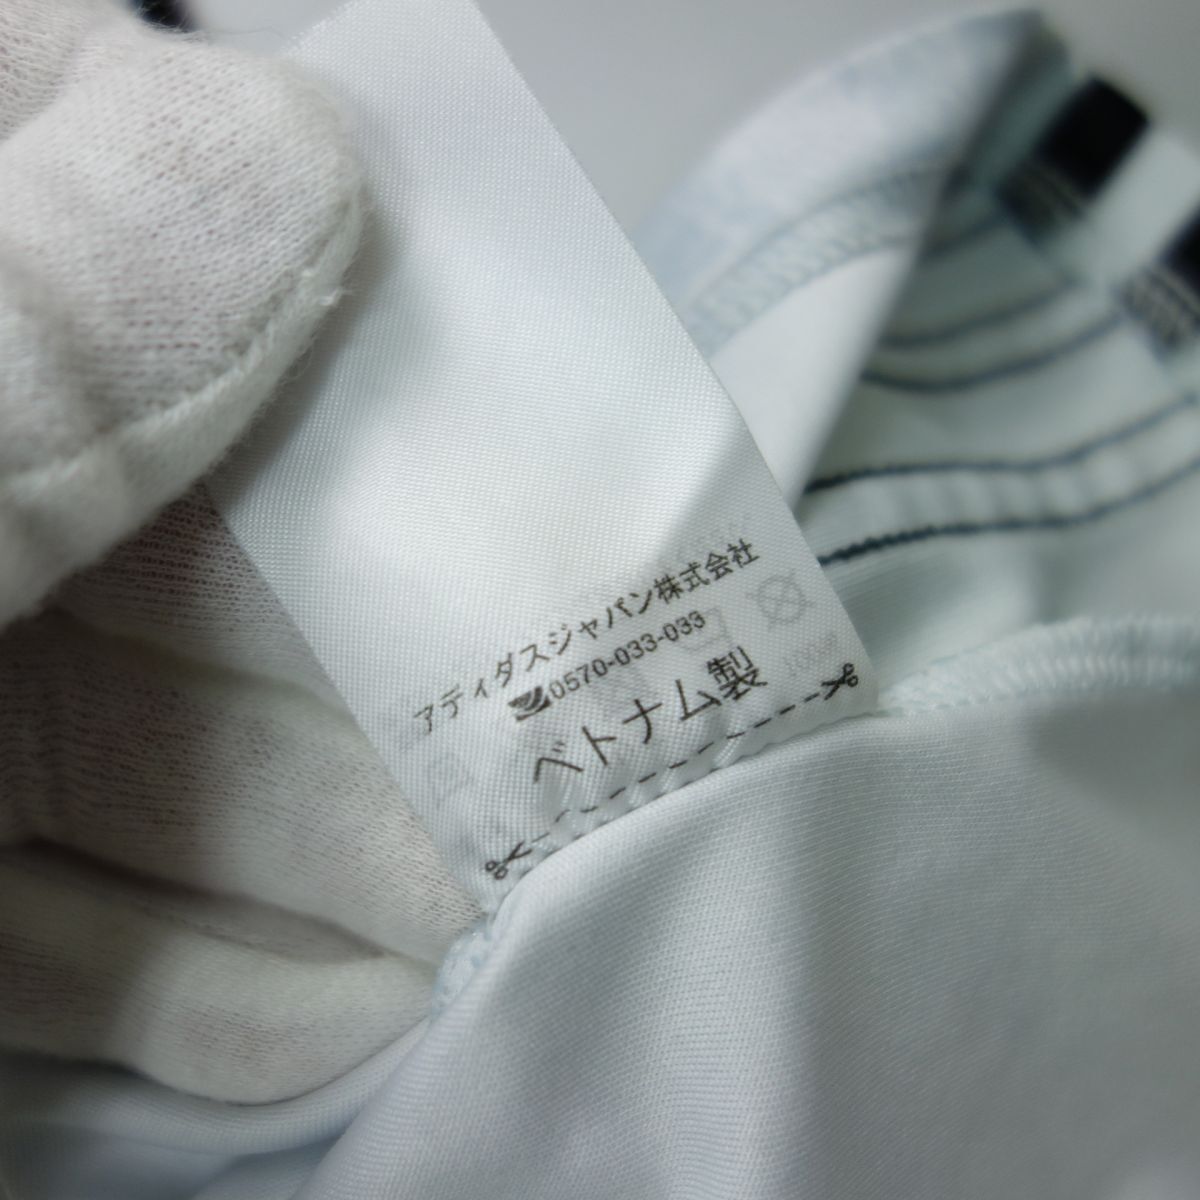  Ricoh черный Ram z Tokyo Adidas производства игрок предметы снабжения форма джерси рубашка 2XO регби to шкив g